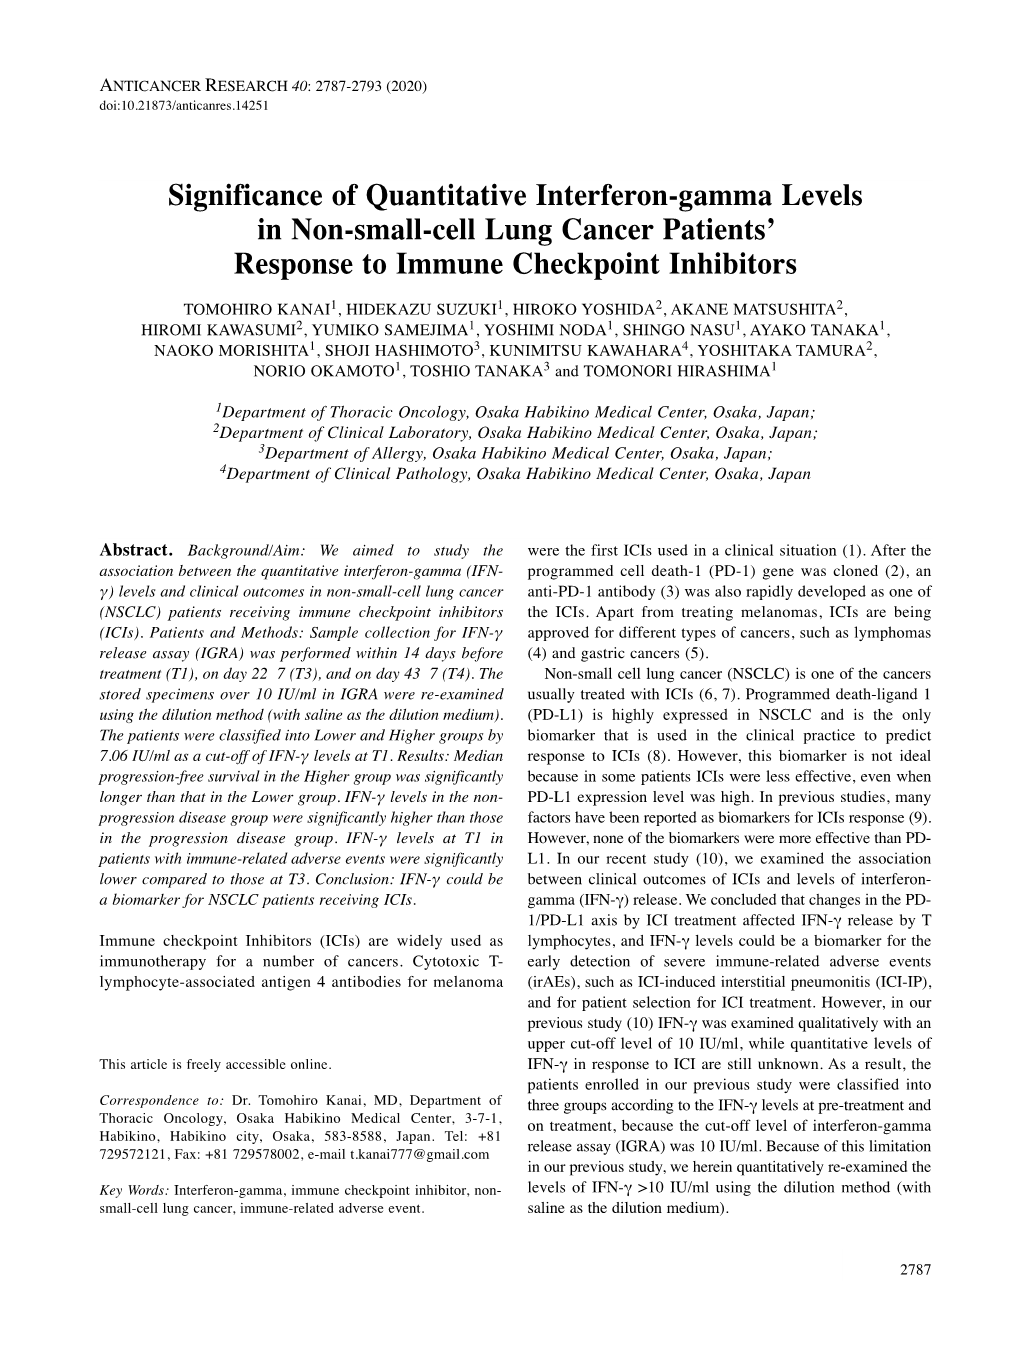 Significance of Quantitative Interferon-Gamma Levels in Non